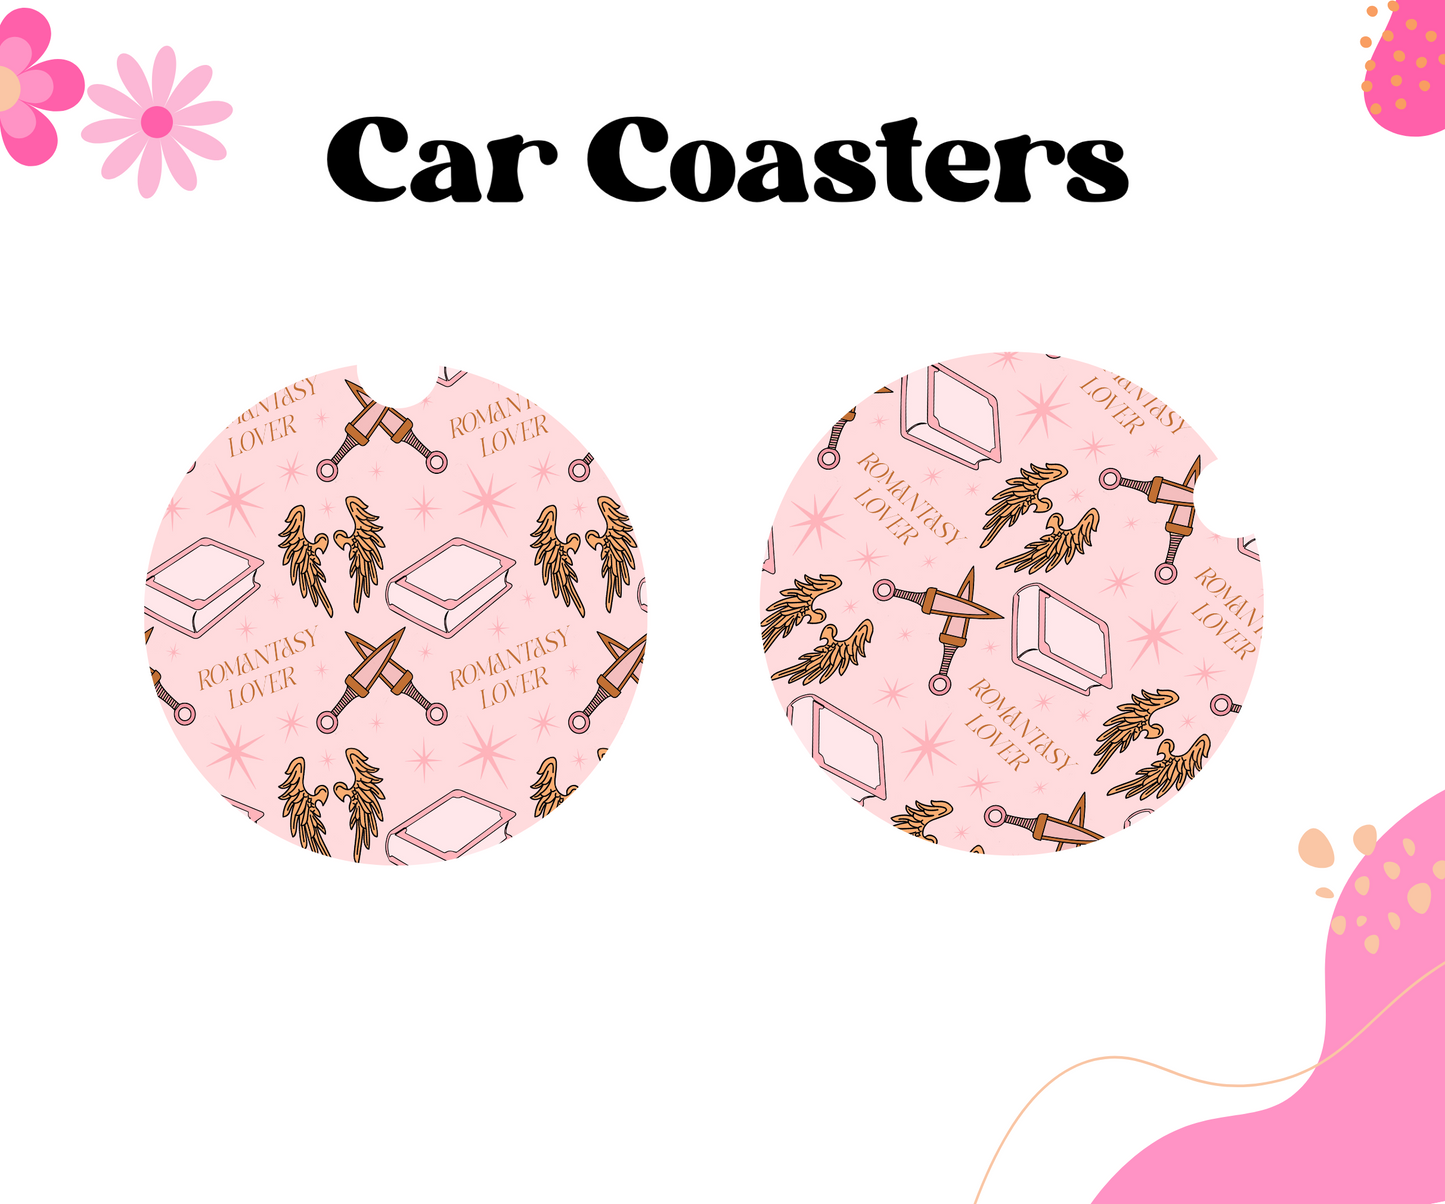 Romantasy Lover Car Coasters